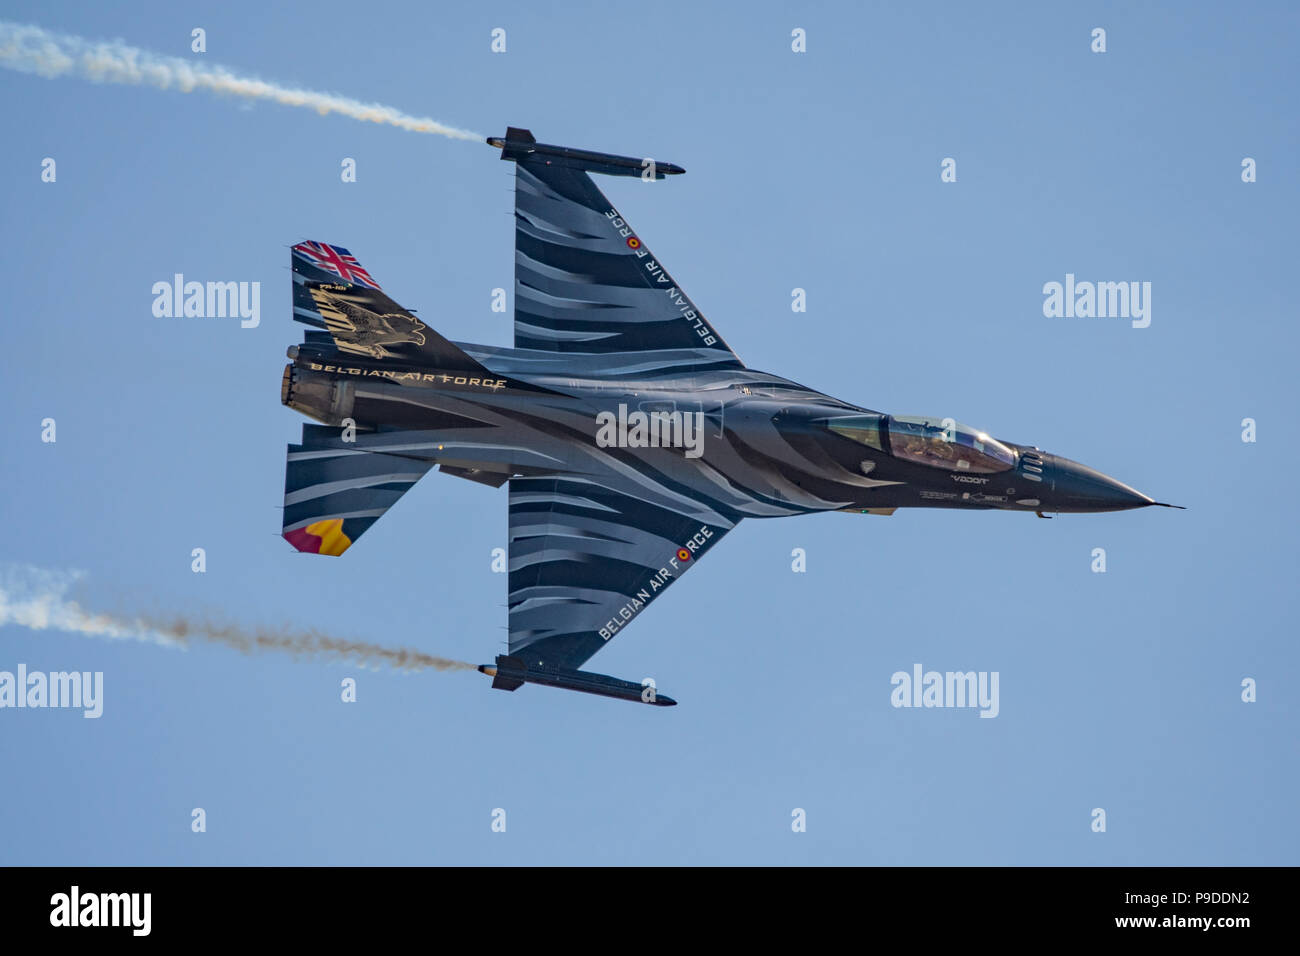 Belgian Air Force F-16 En vedette L'affichage d'un nouveau schéma de peinture et l'ajout d'un Union Jack sur l'empennage pour RAF Yeovilton à 100 jours de l'air 7/7/18. Banque D'Images